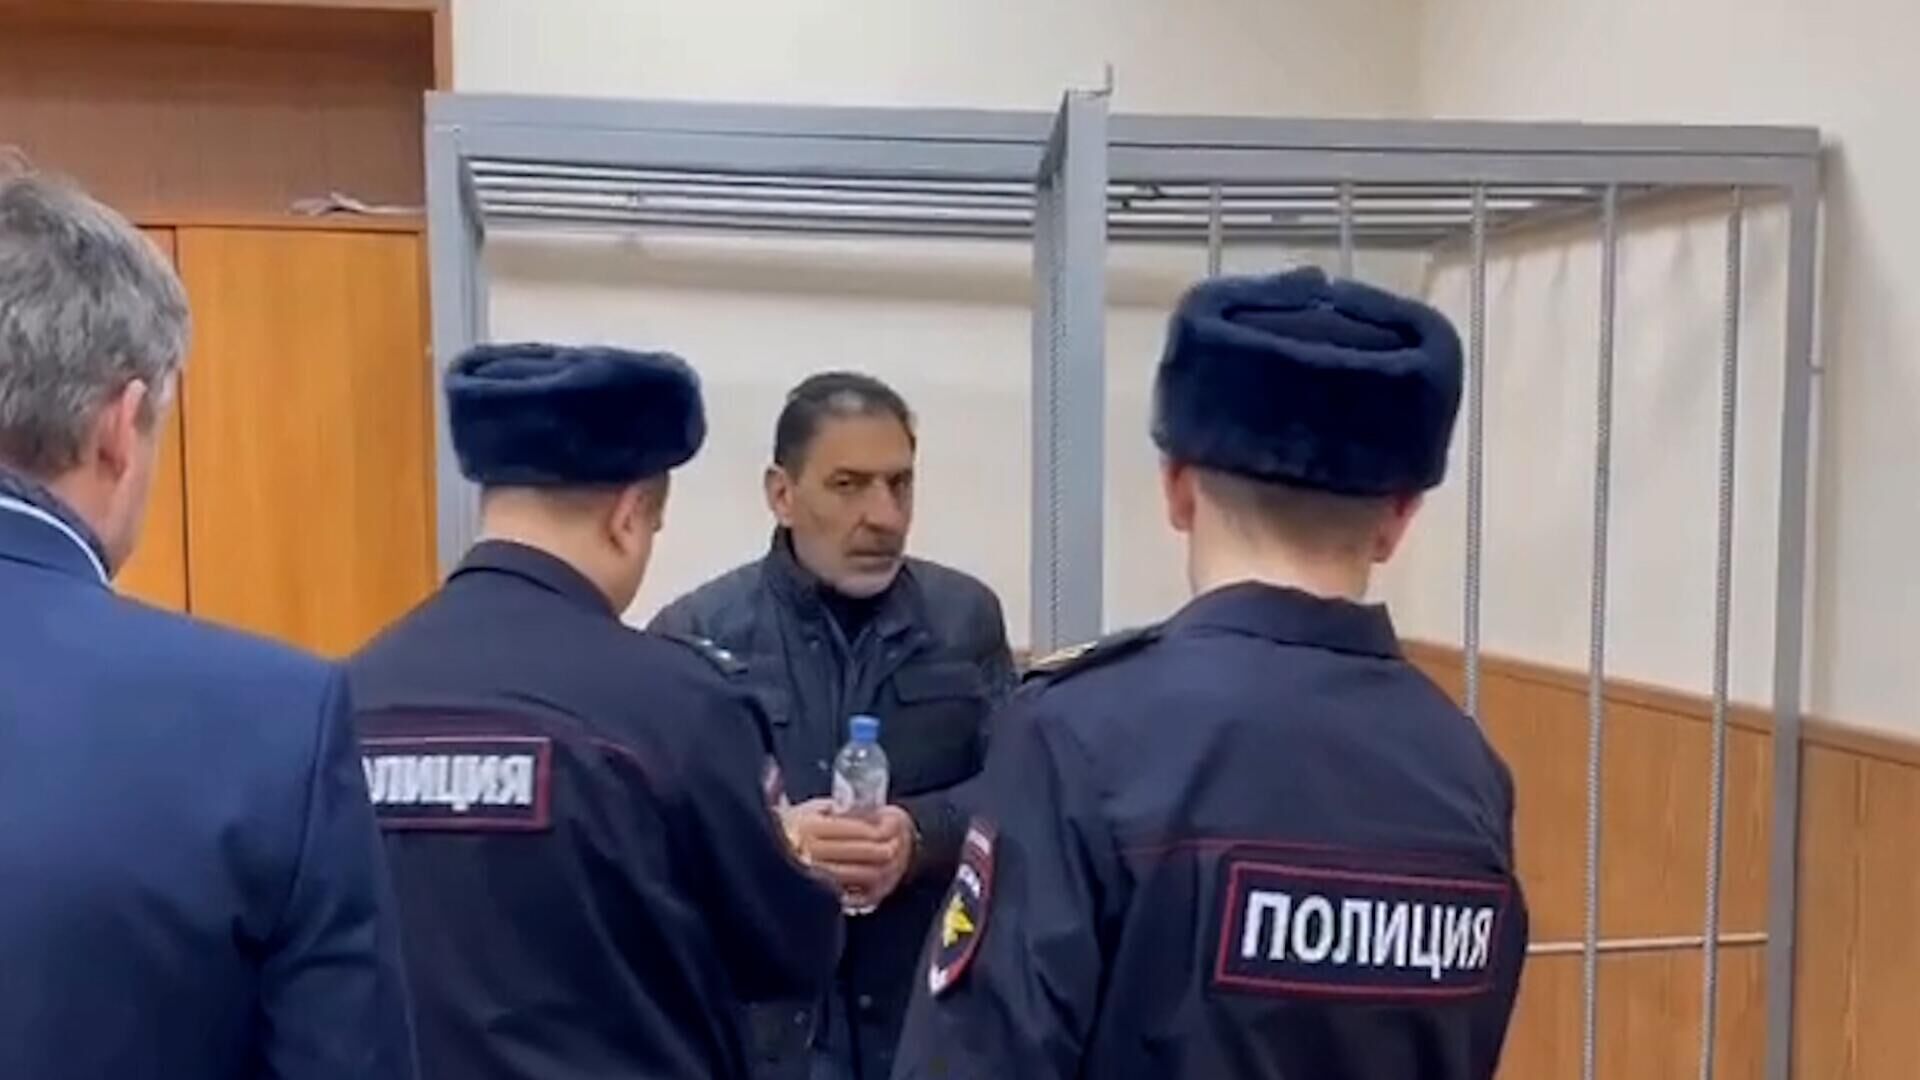 Г б мирзоев. Ихтияр Мирзоев Кострома. Суд арест. Депутат Мирзоев. Фотография под арестом.